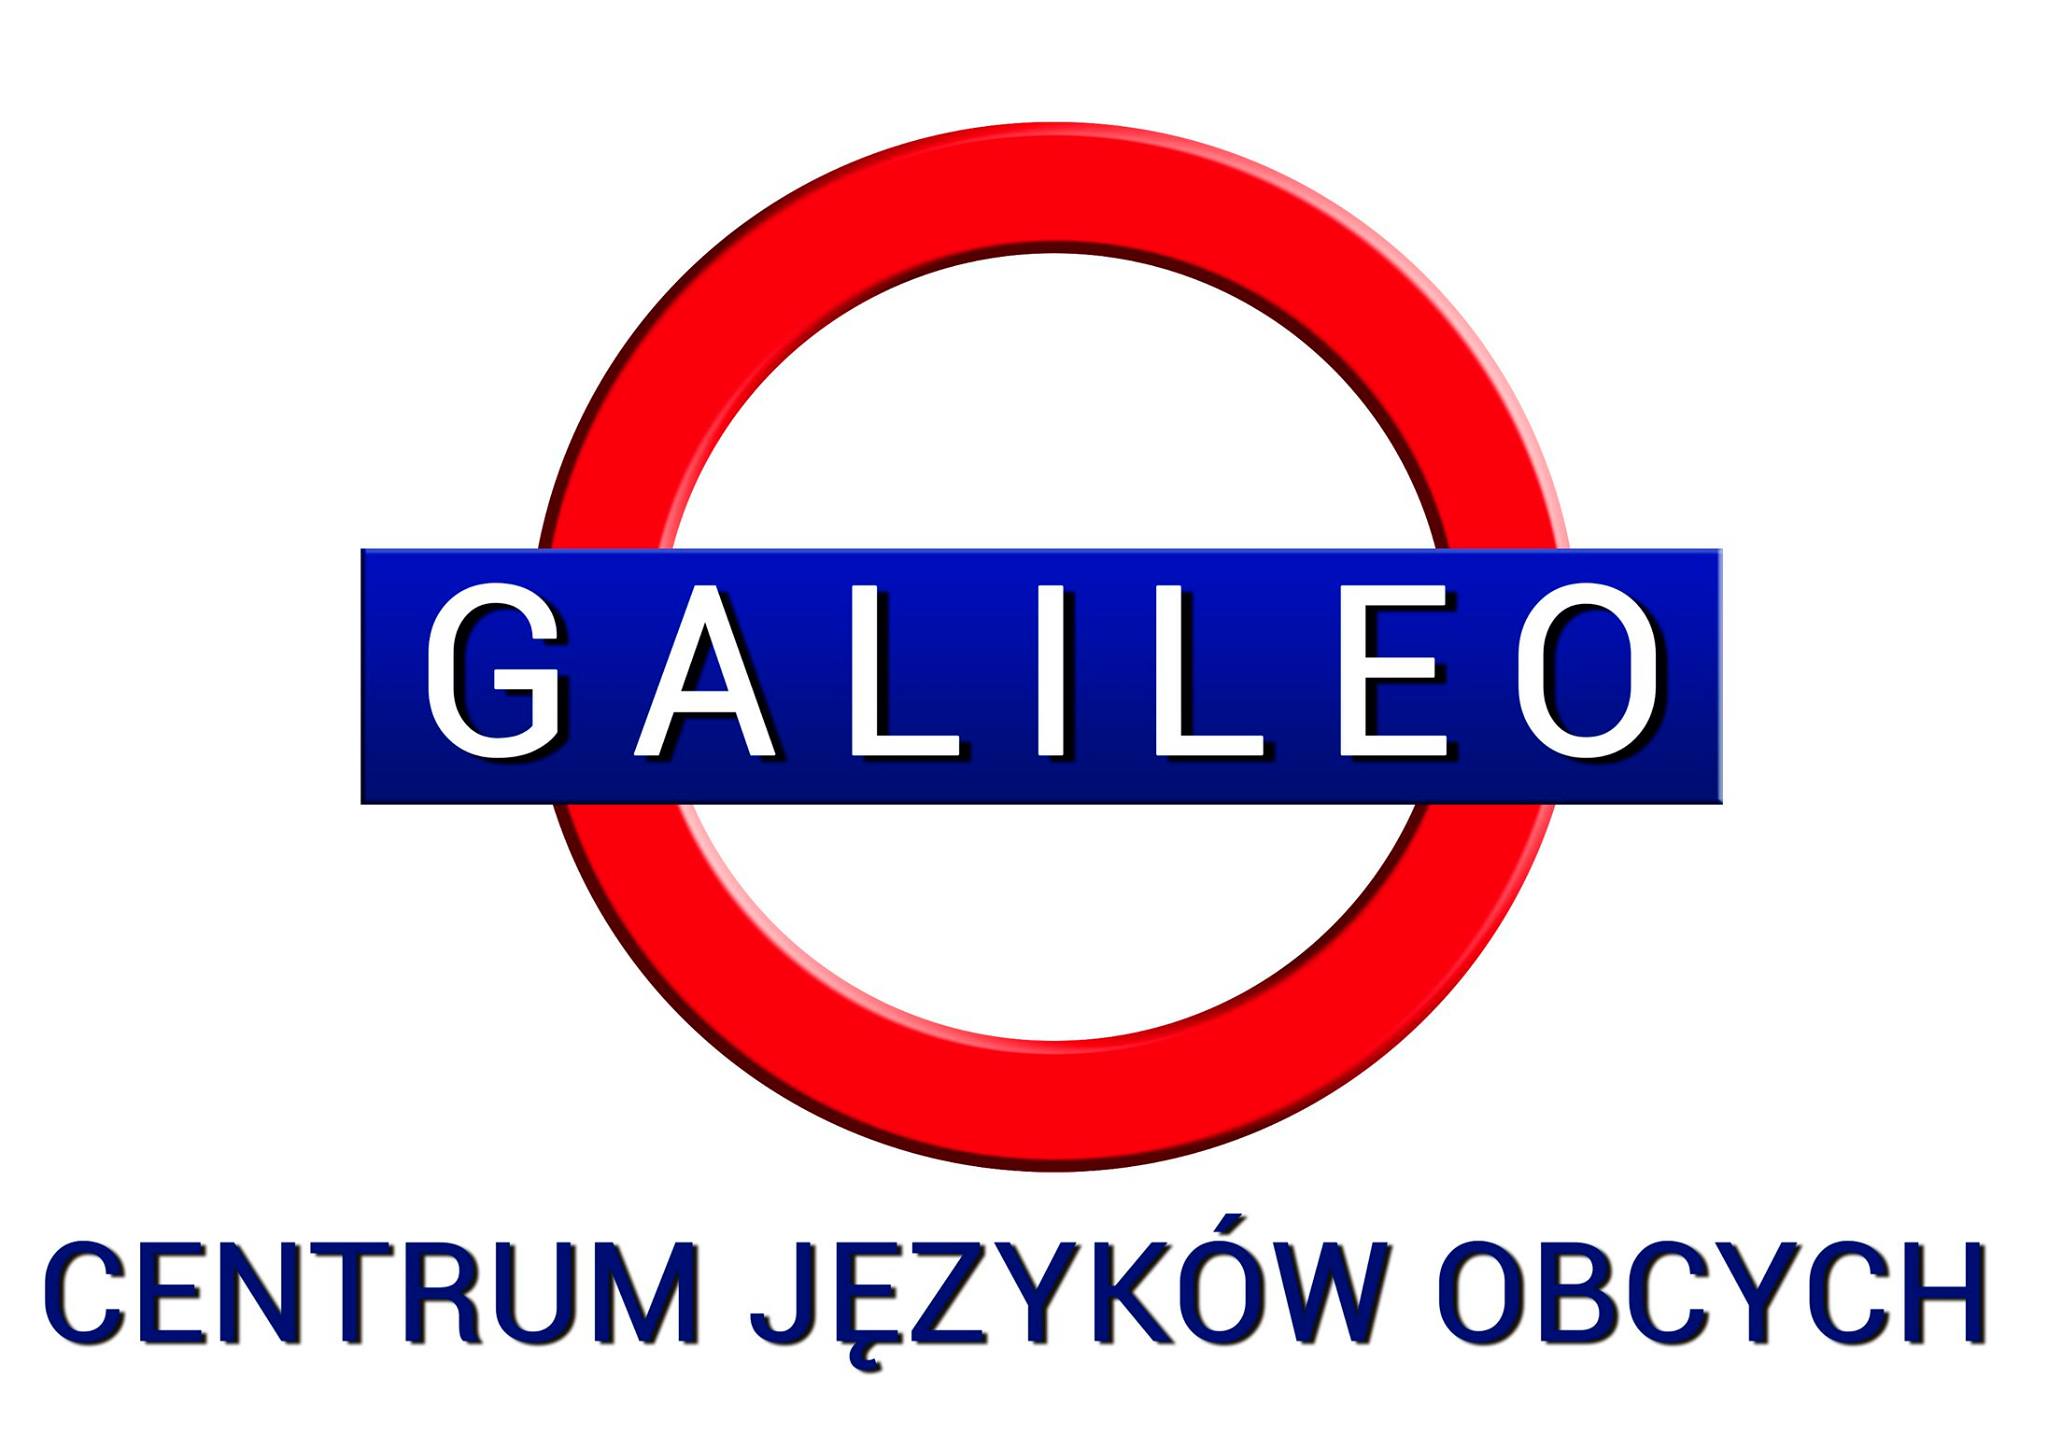 Centrum Języków Obcych Galileo